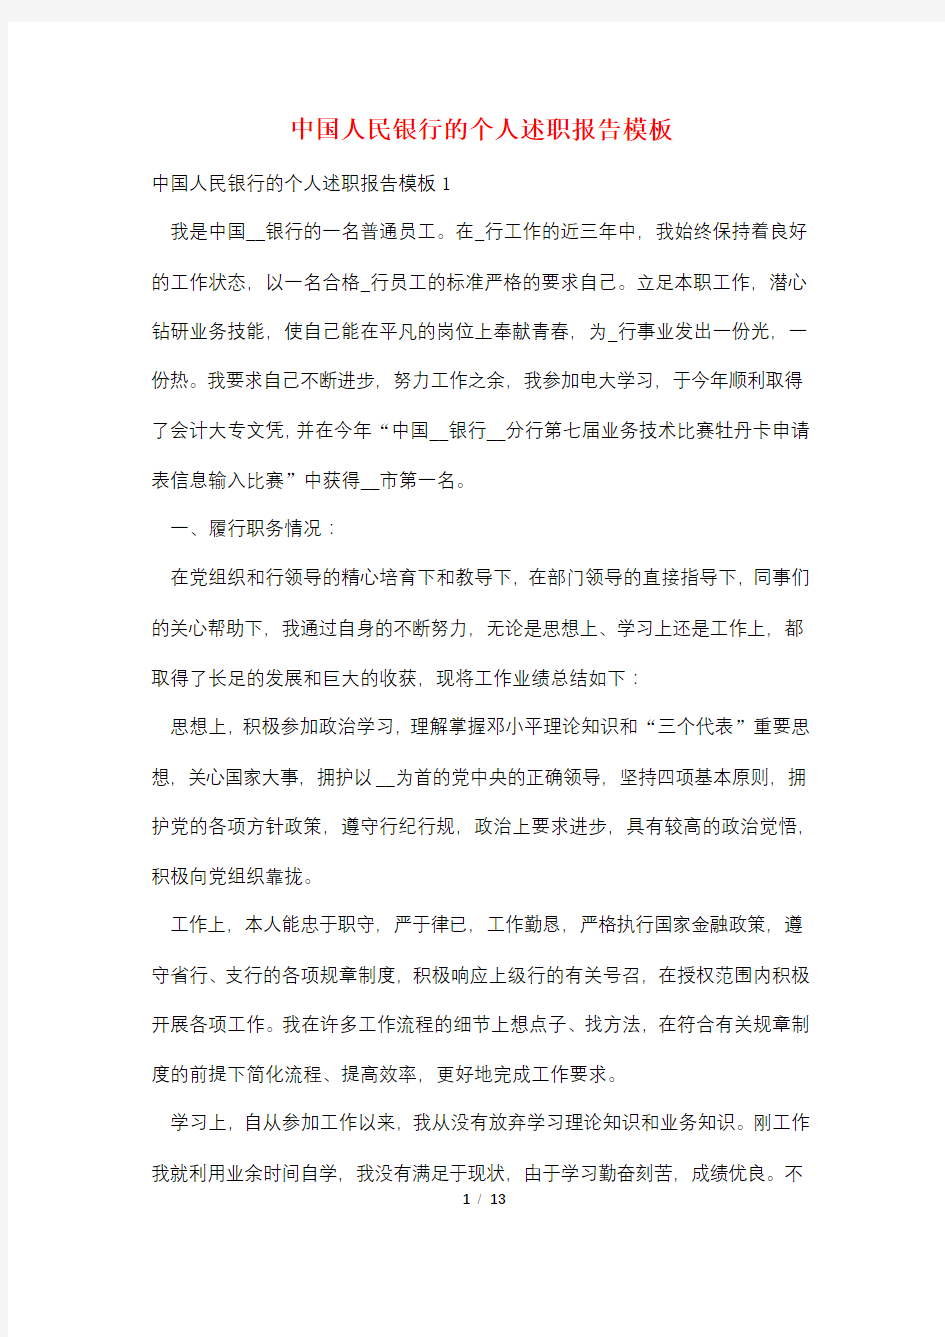 中国人民银行的个人述职报告模板